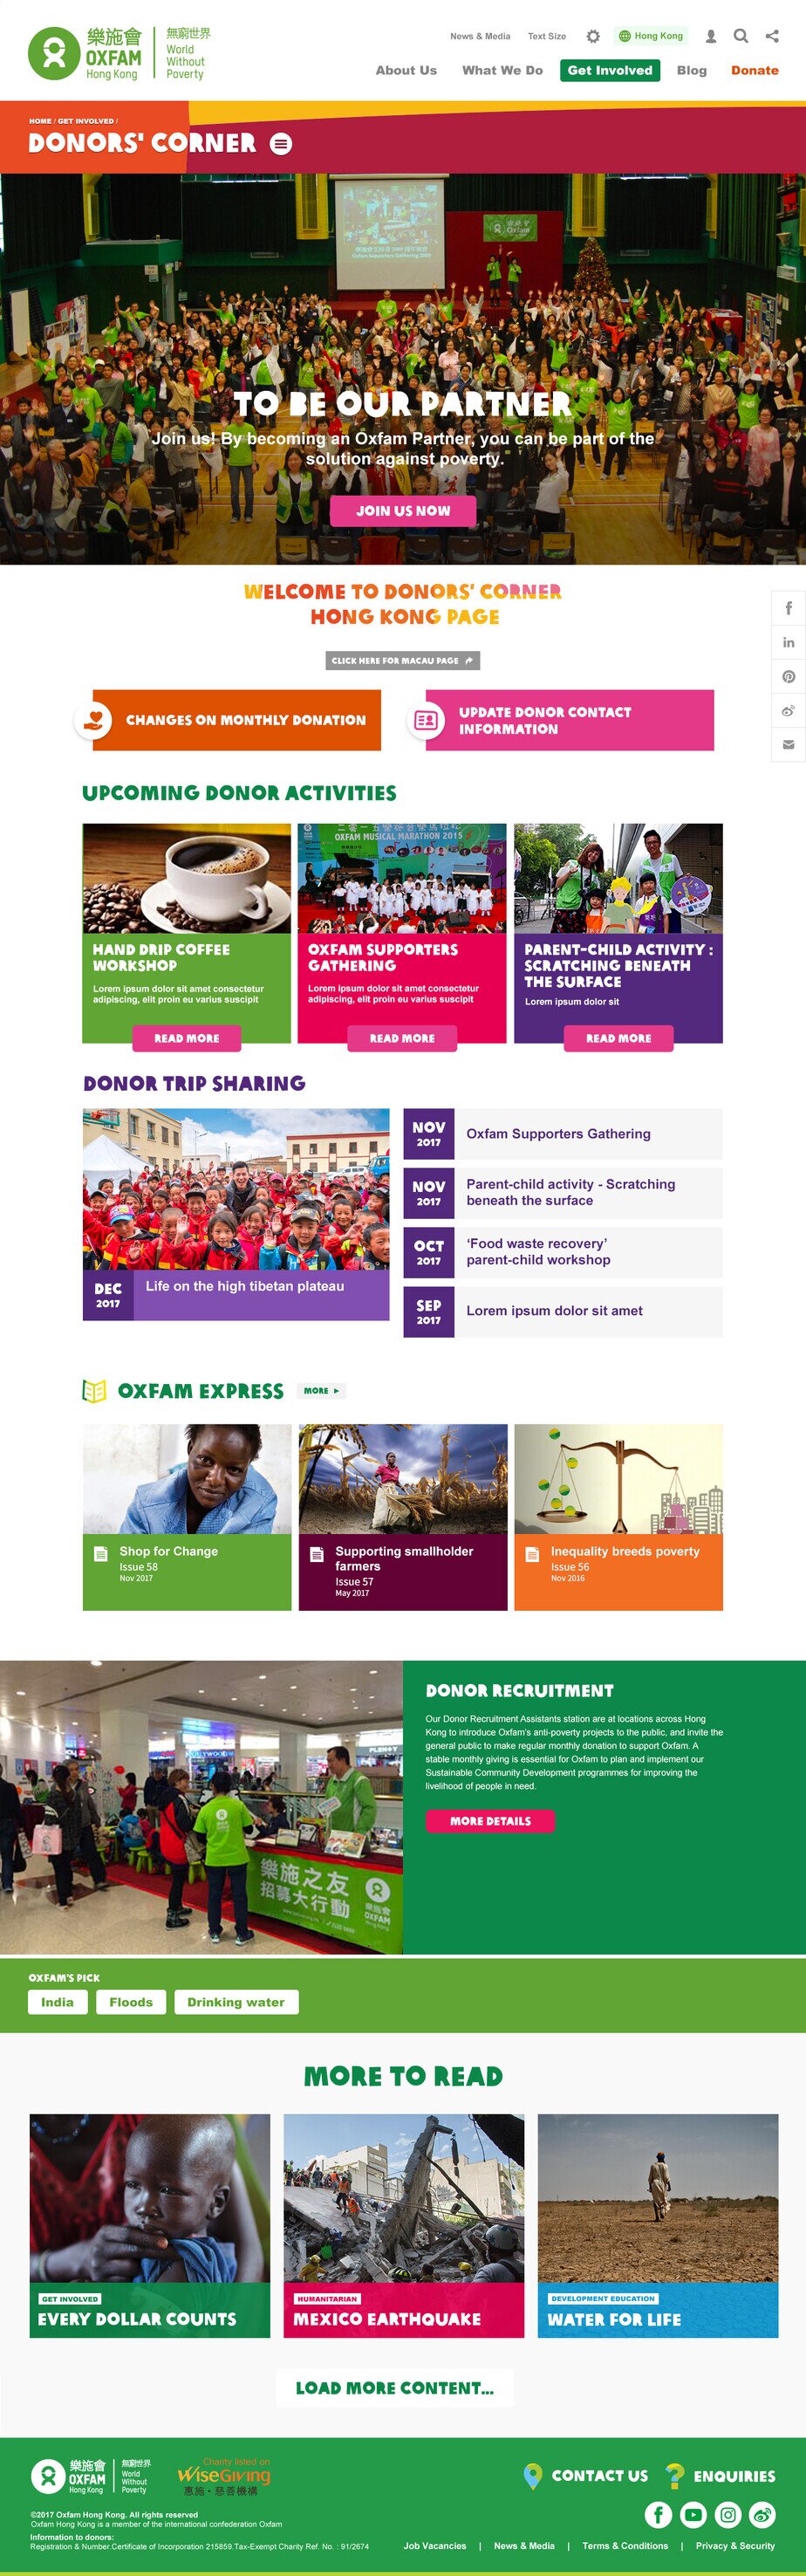 Oxfam Hong Kong website screenshot for desktop version 7 of 7